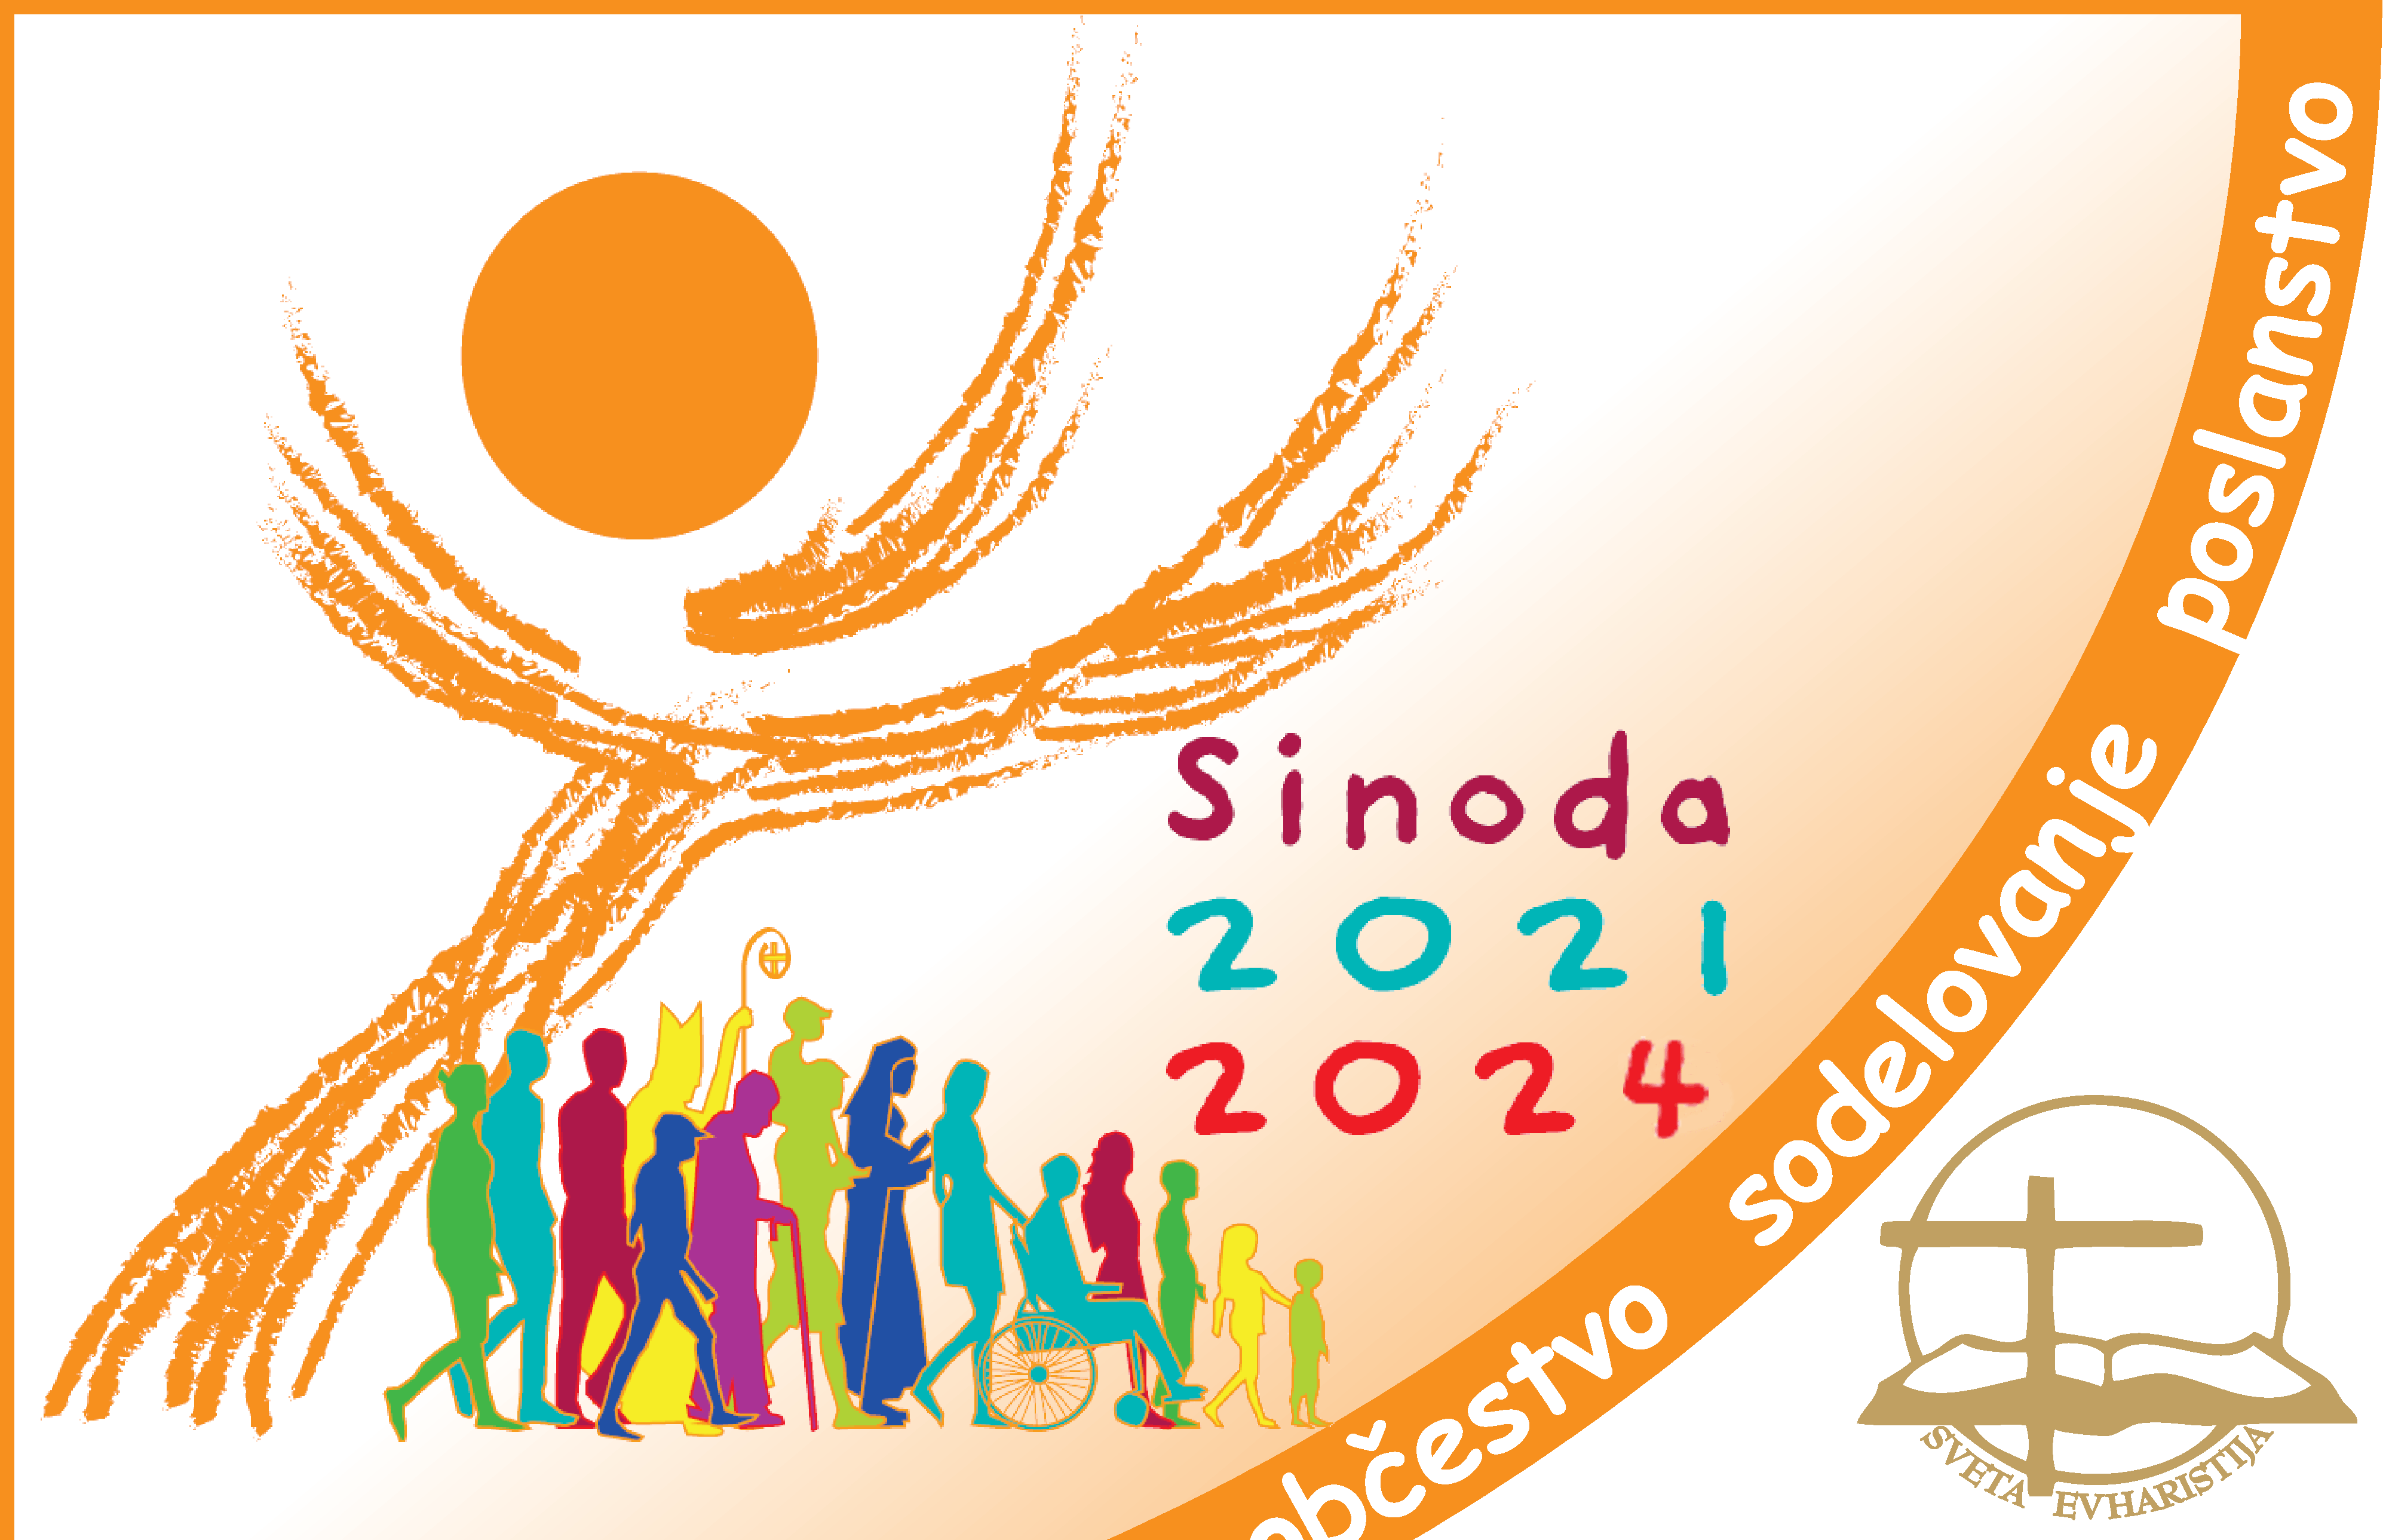 SINODA 20212023